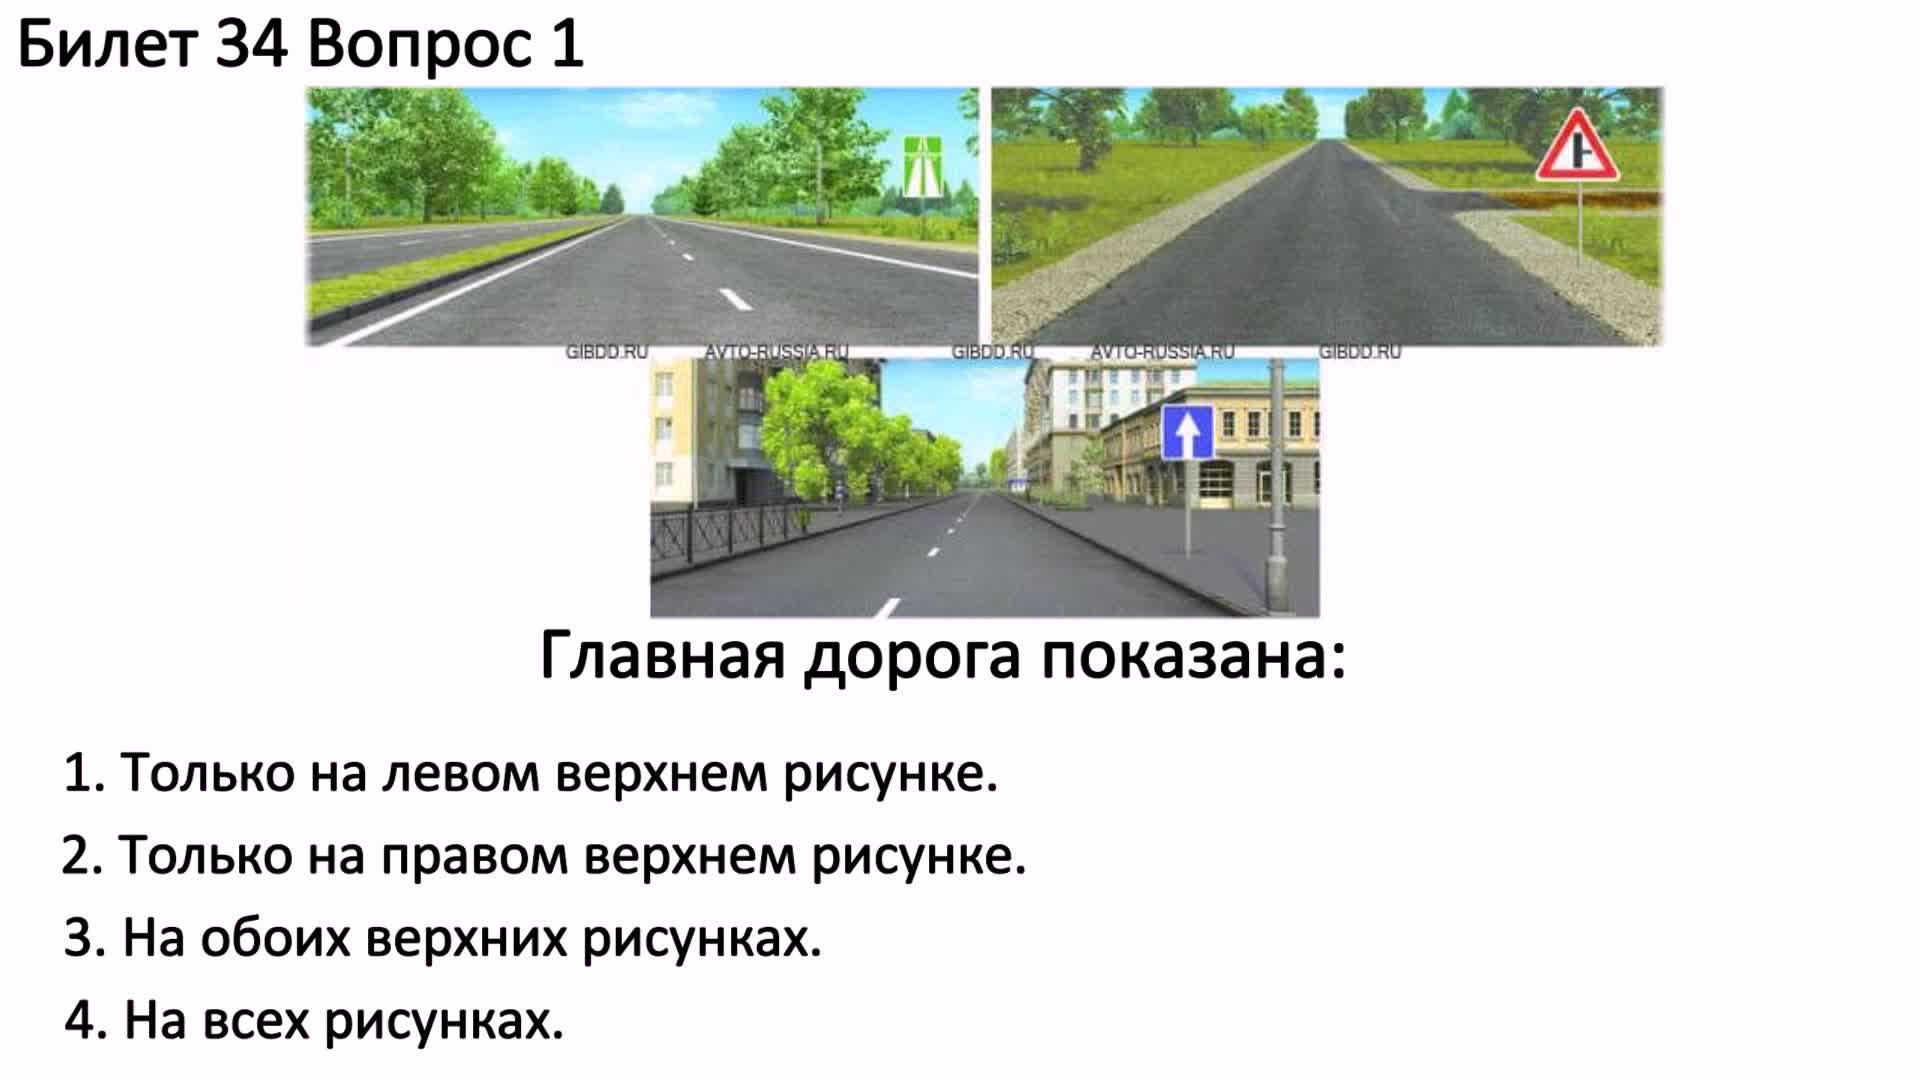 Ответ дорога в россию 2. Главная дорога покщана. Глава ядорога показана. Главная дорога показана. Glavnaia Daroga.